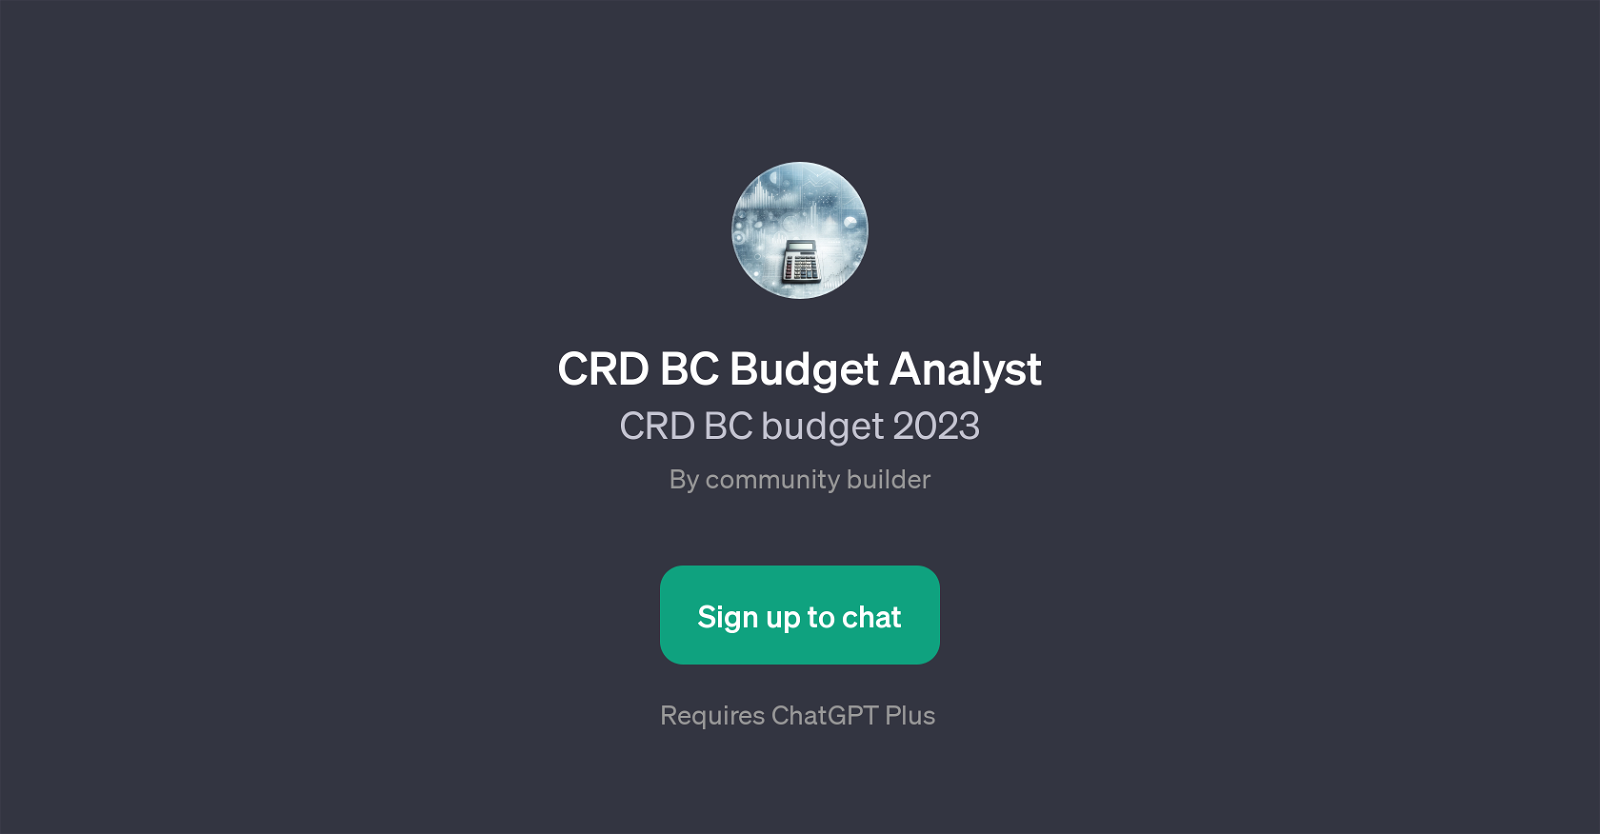 CRD BC Budget Analyst website